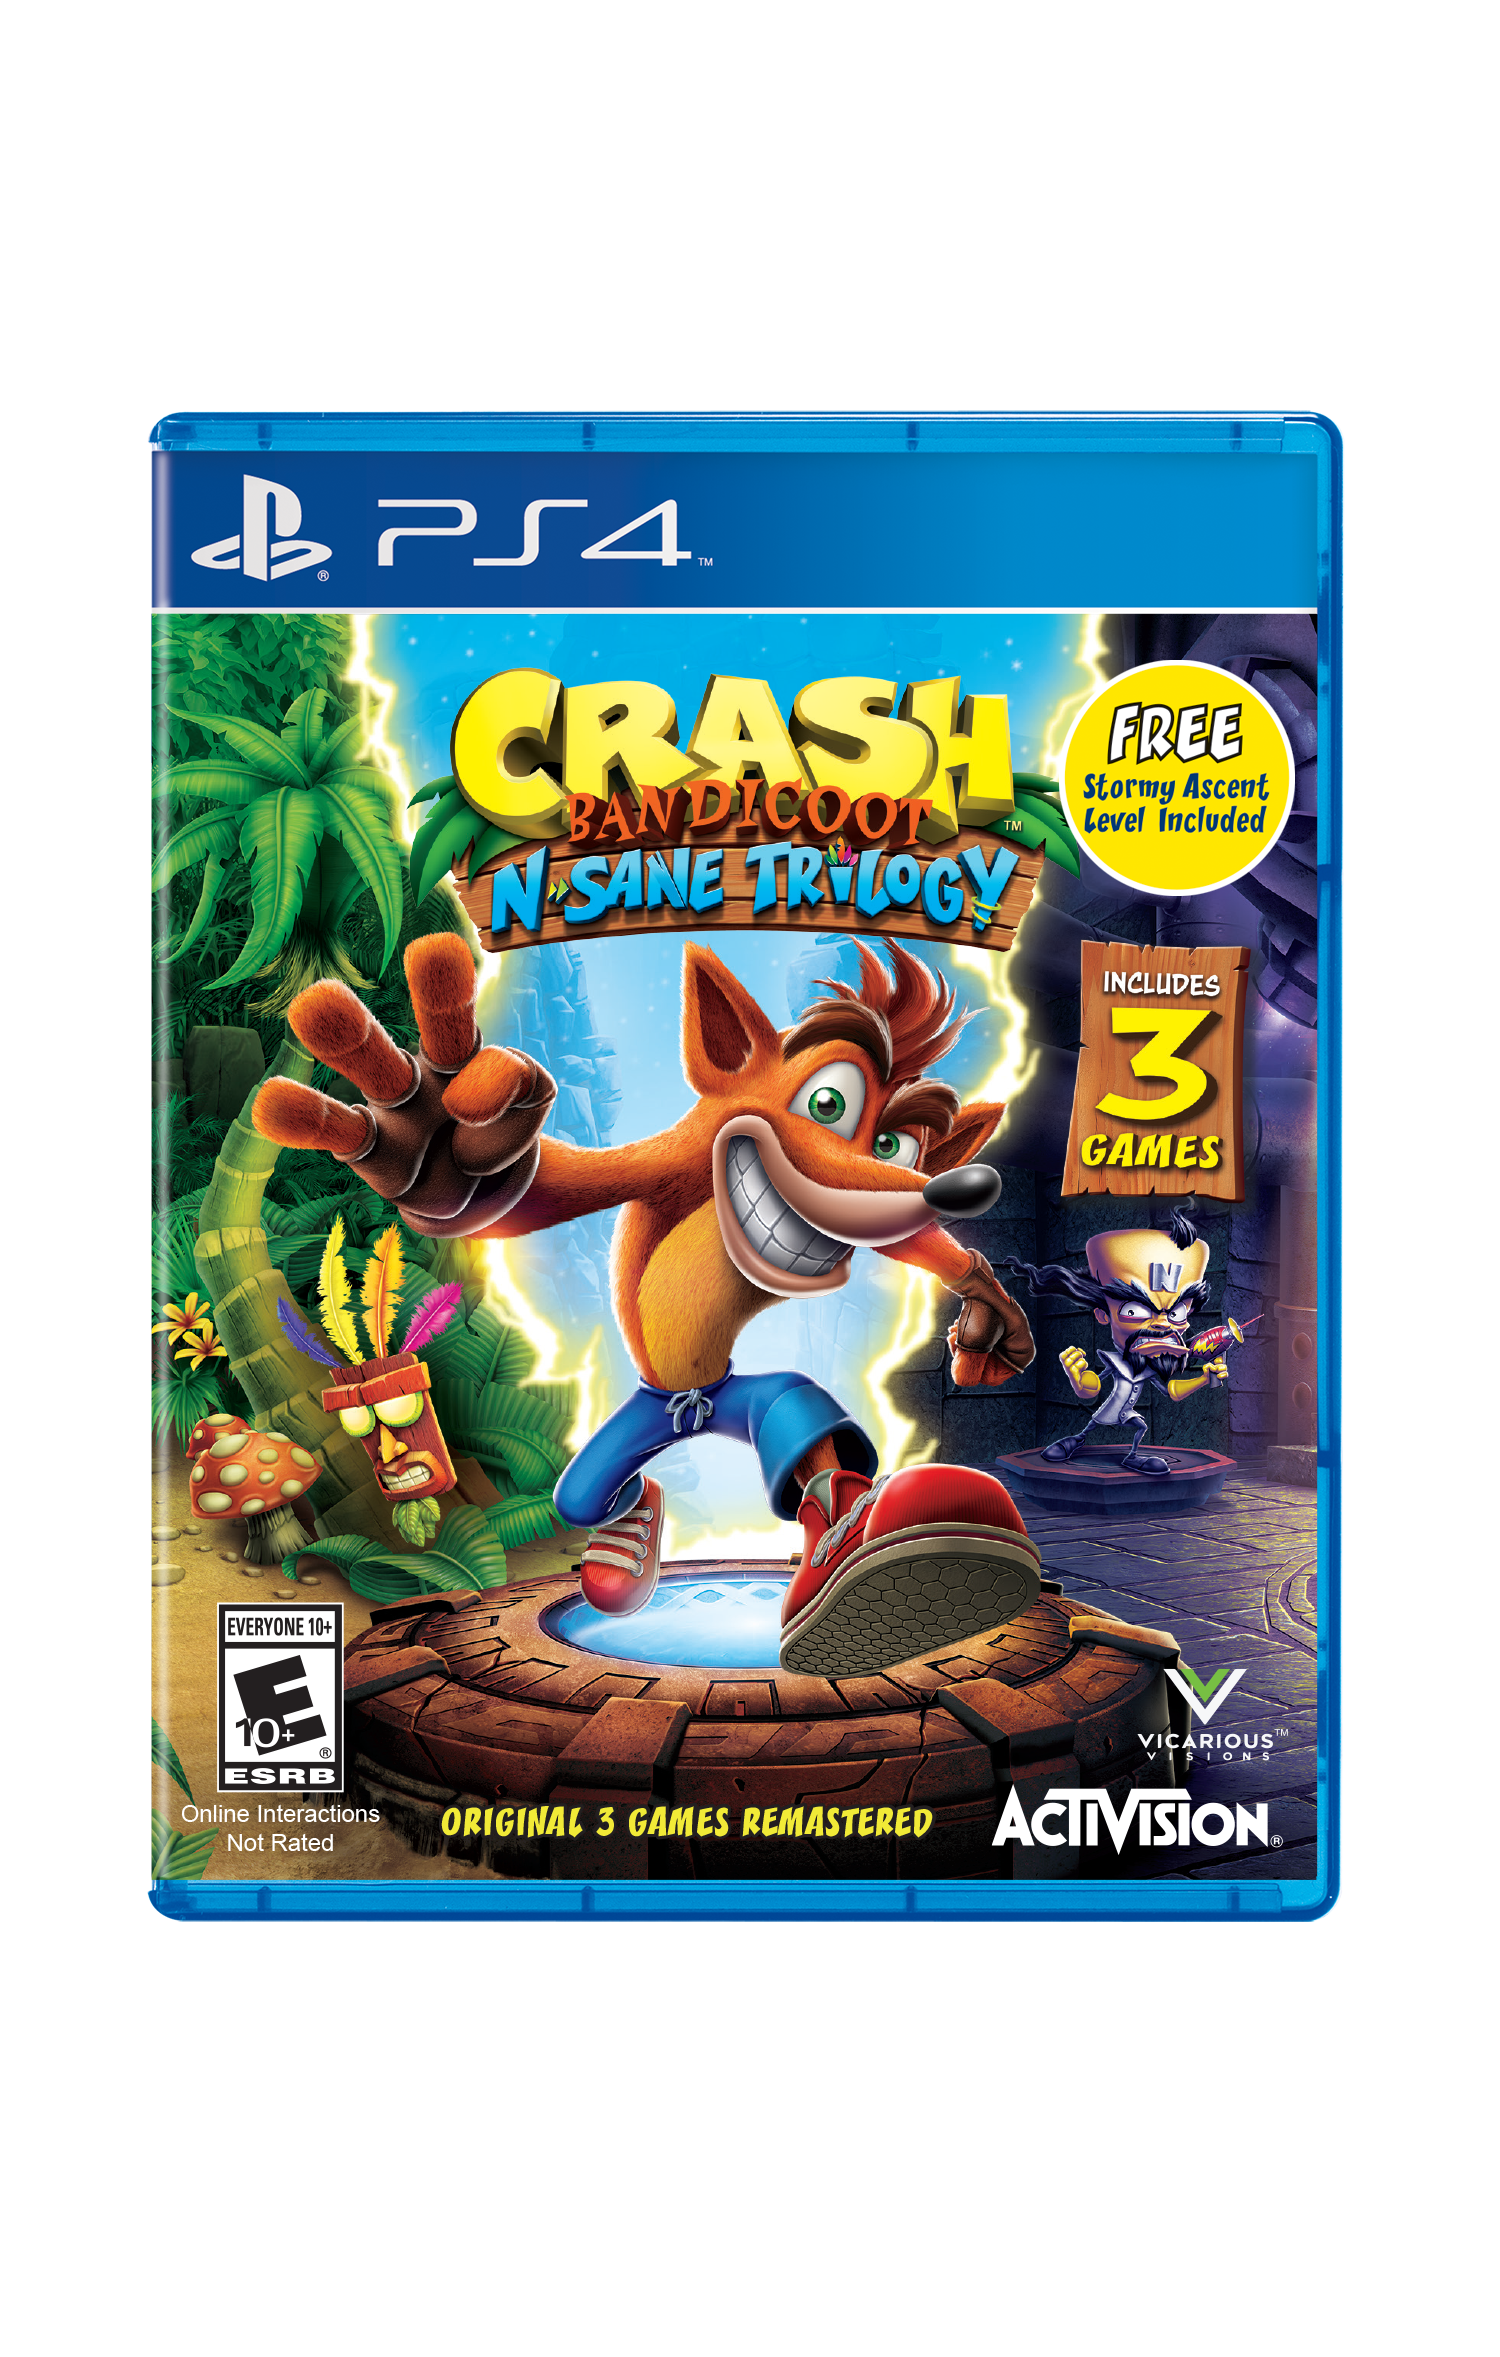 Crash Bandicoot Special Edition Walmart Exclusive Ps4